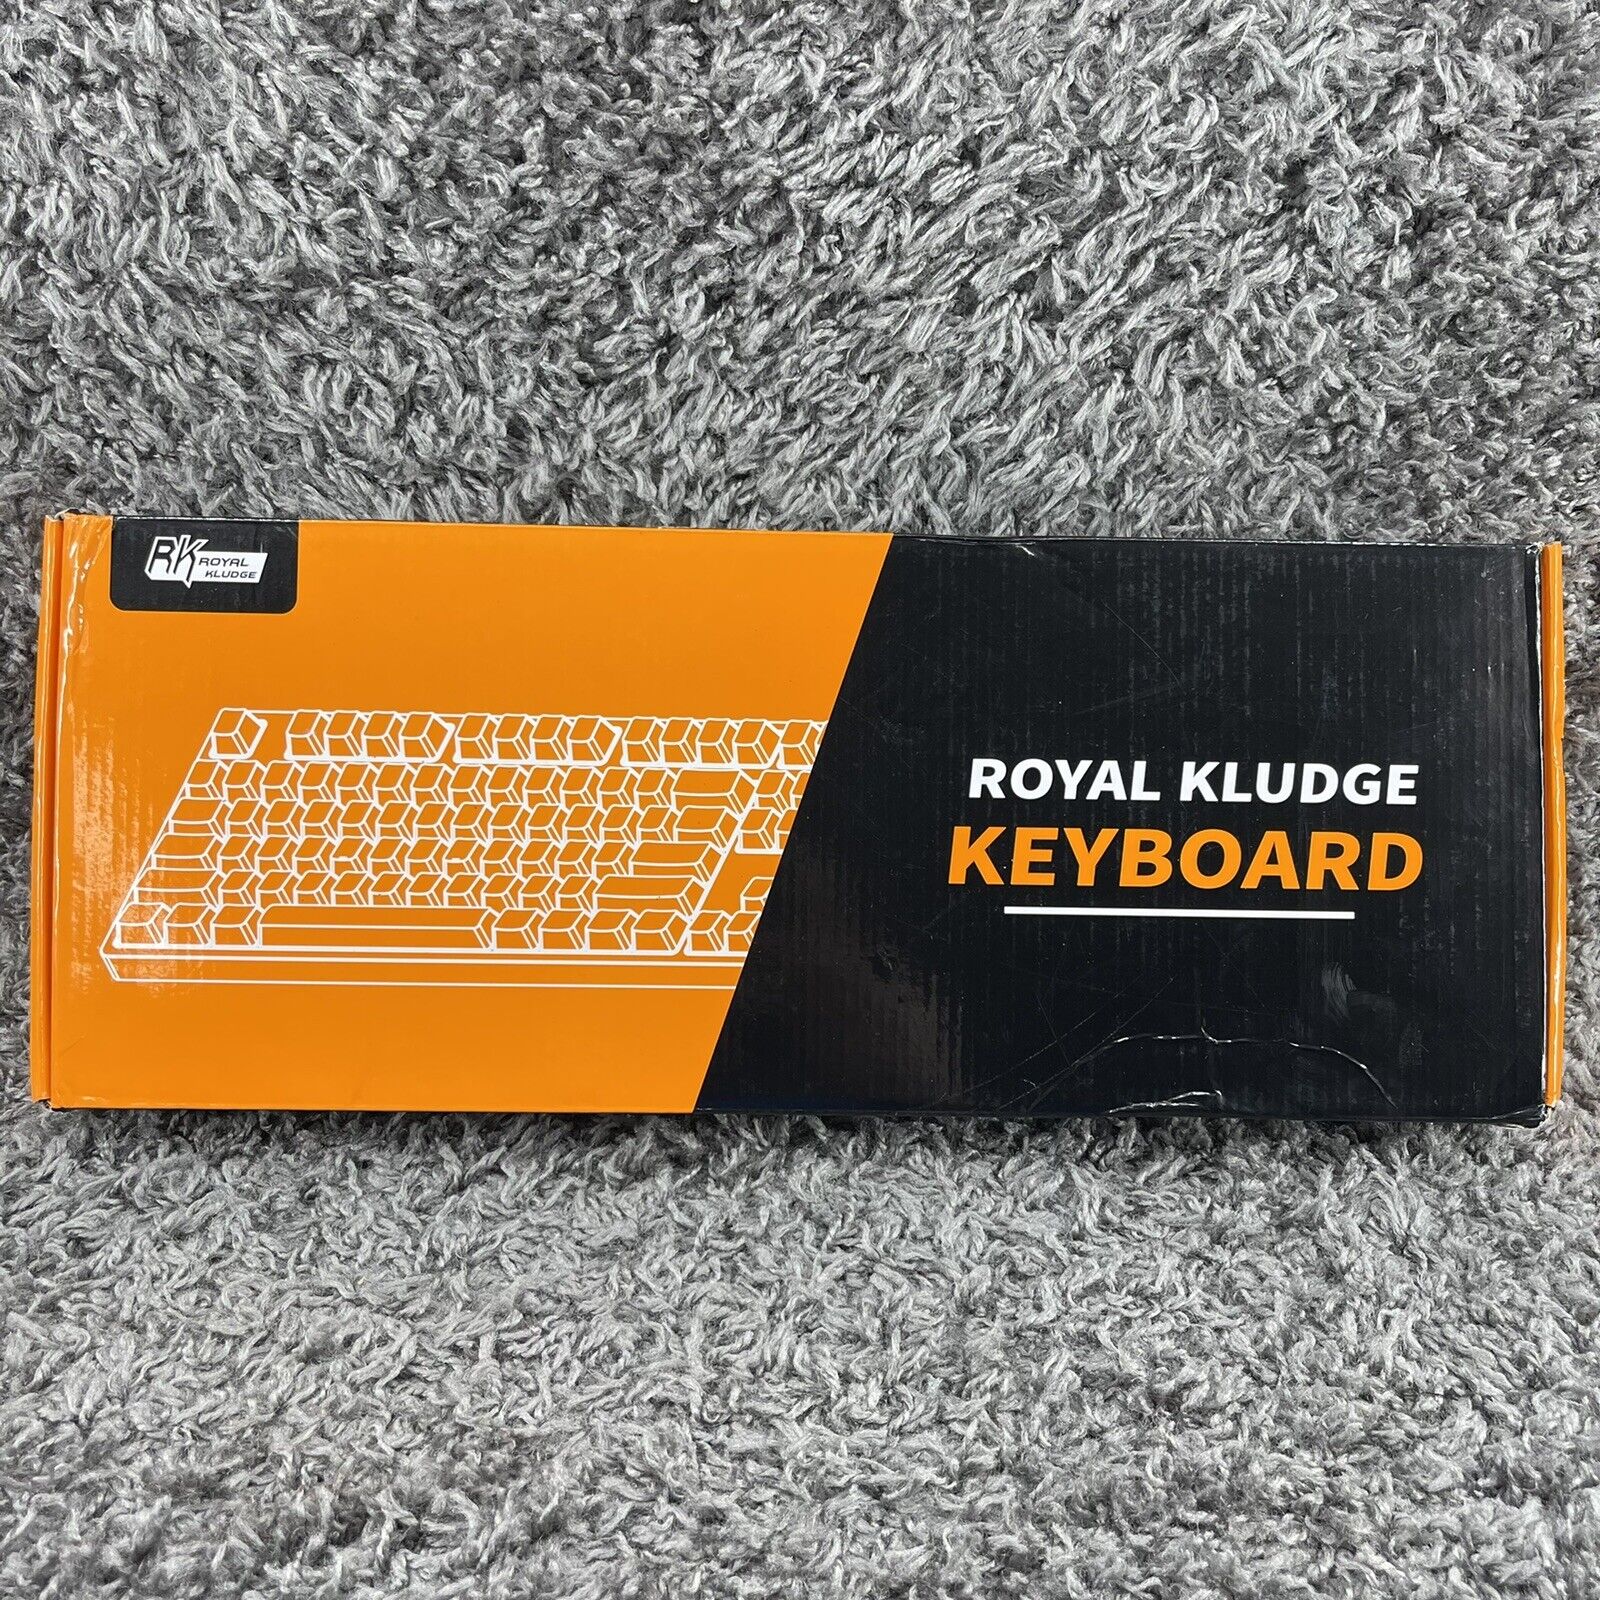 rk royal kludge typewriter